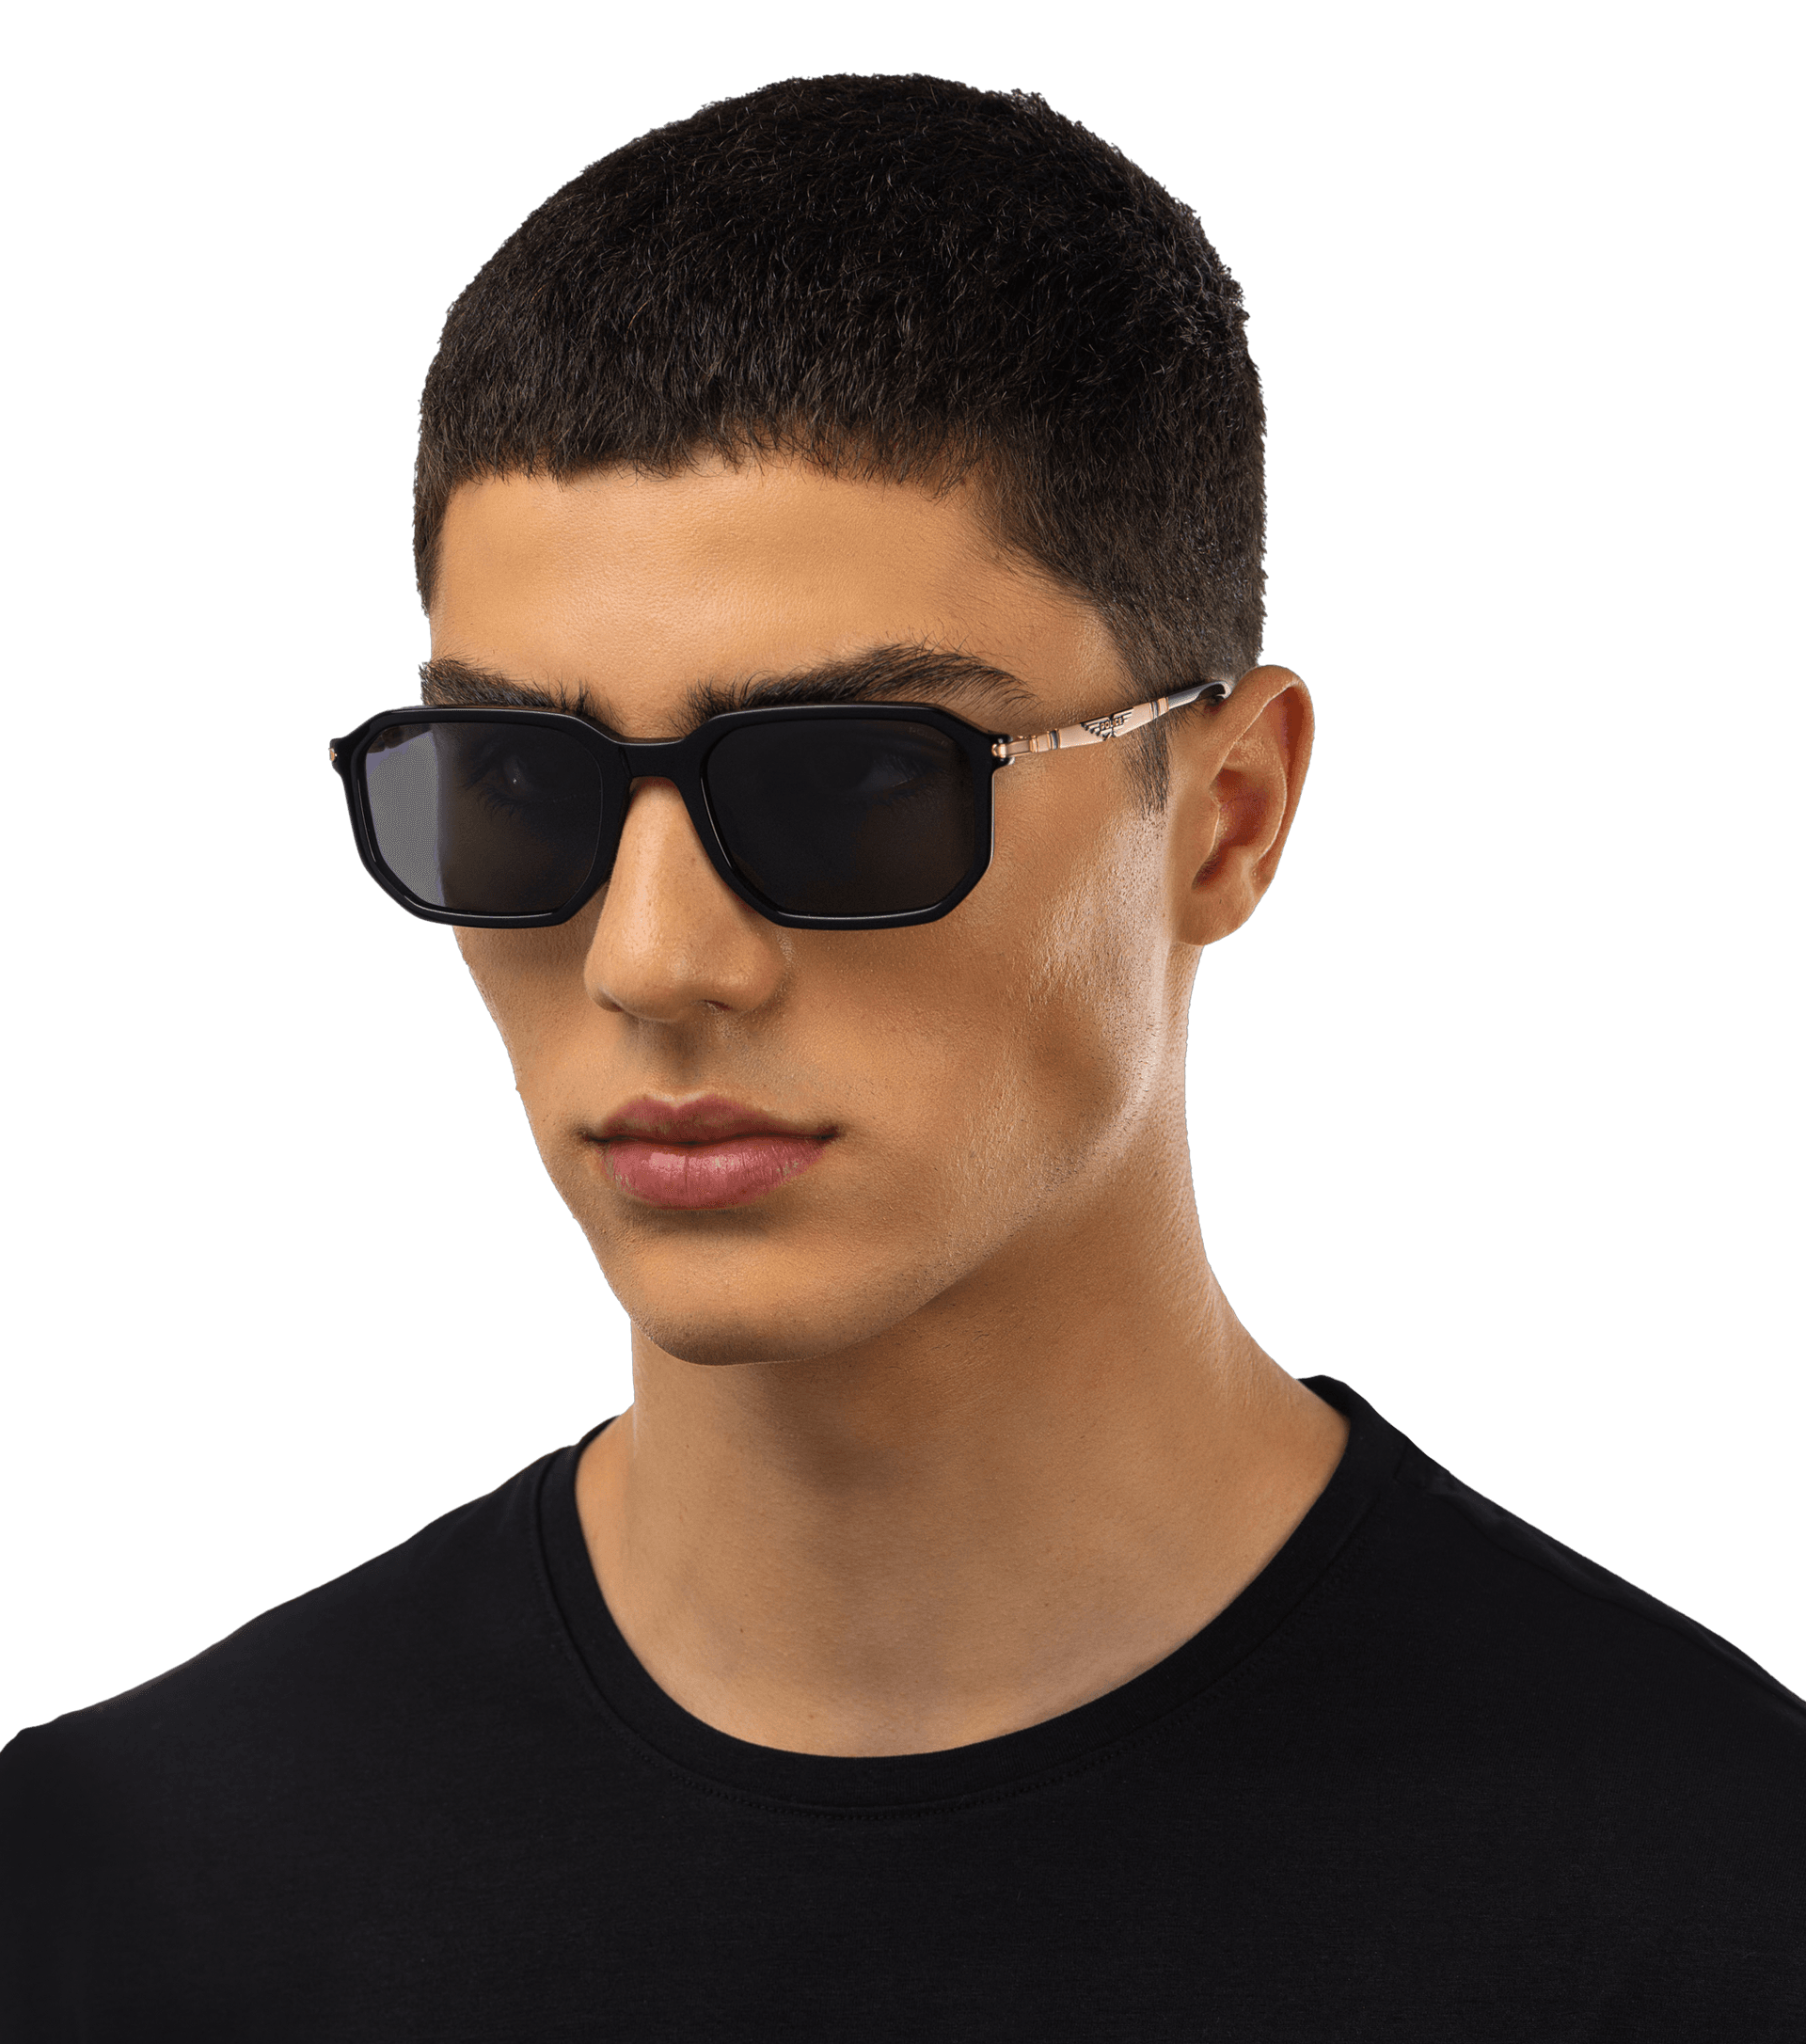 Origins Nineties 5 Man Sunglasses Police SPLF69 Grey, Brown